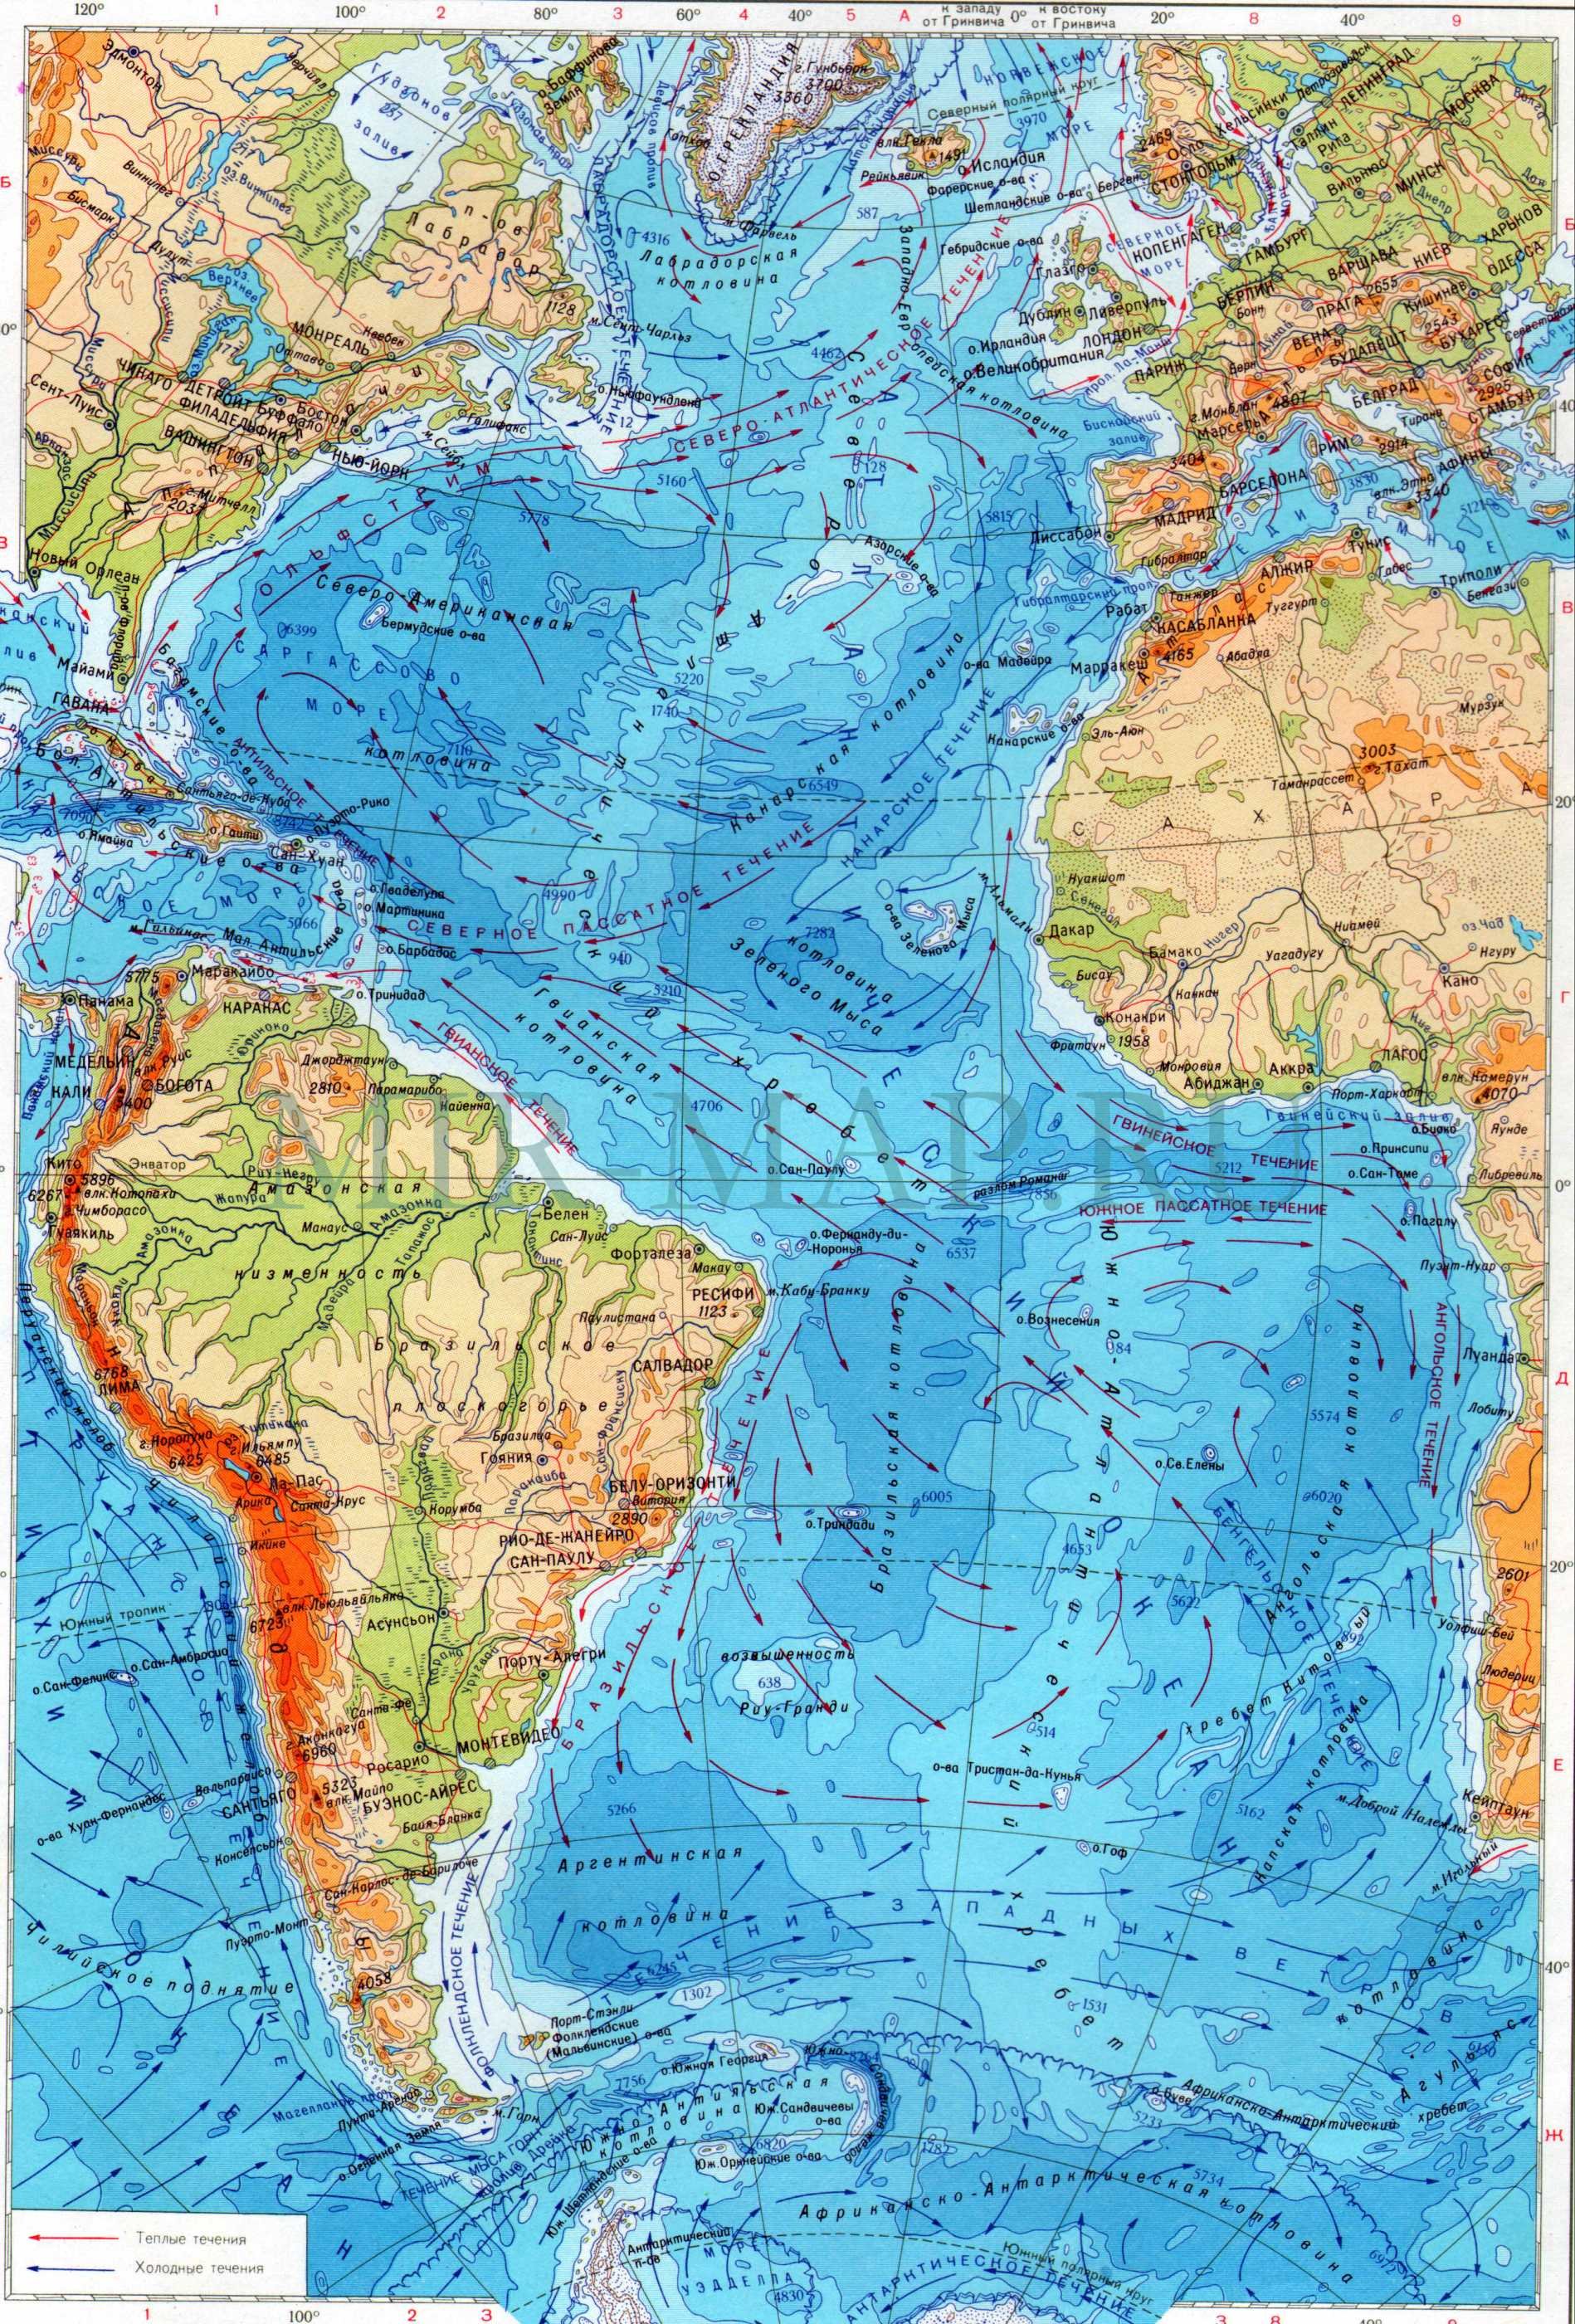 Карта Атлантического океана подробная